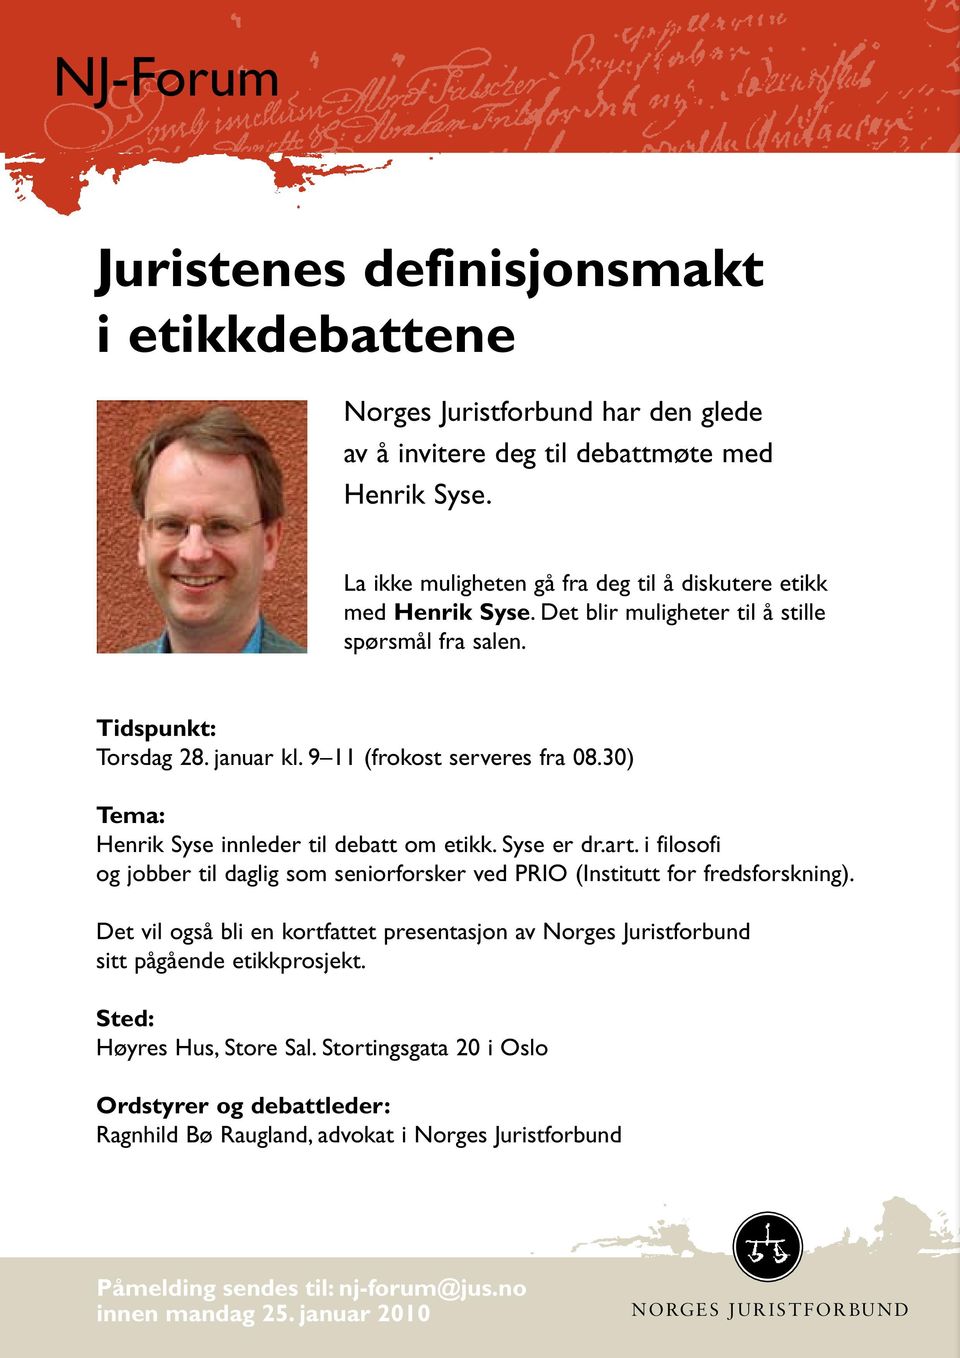 30) Tema: Henrik Syse innleder til debatt om etikk. Syse er dr.art. i filosofi og jobber til daglig som seniorforsker ved PRIO (Institutt for fredsforskning).